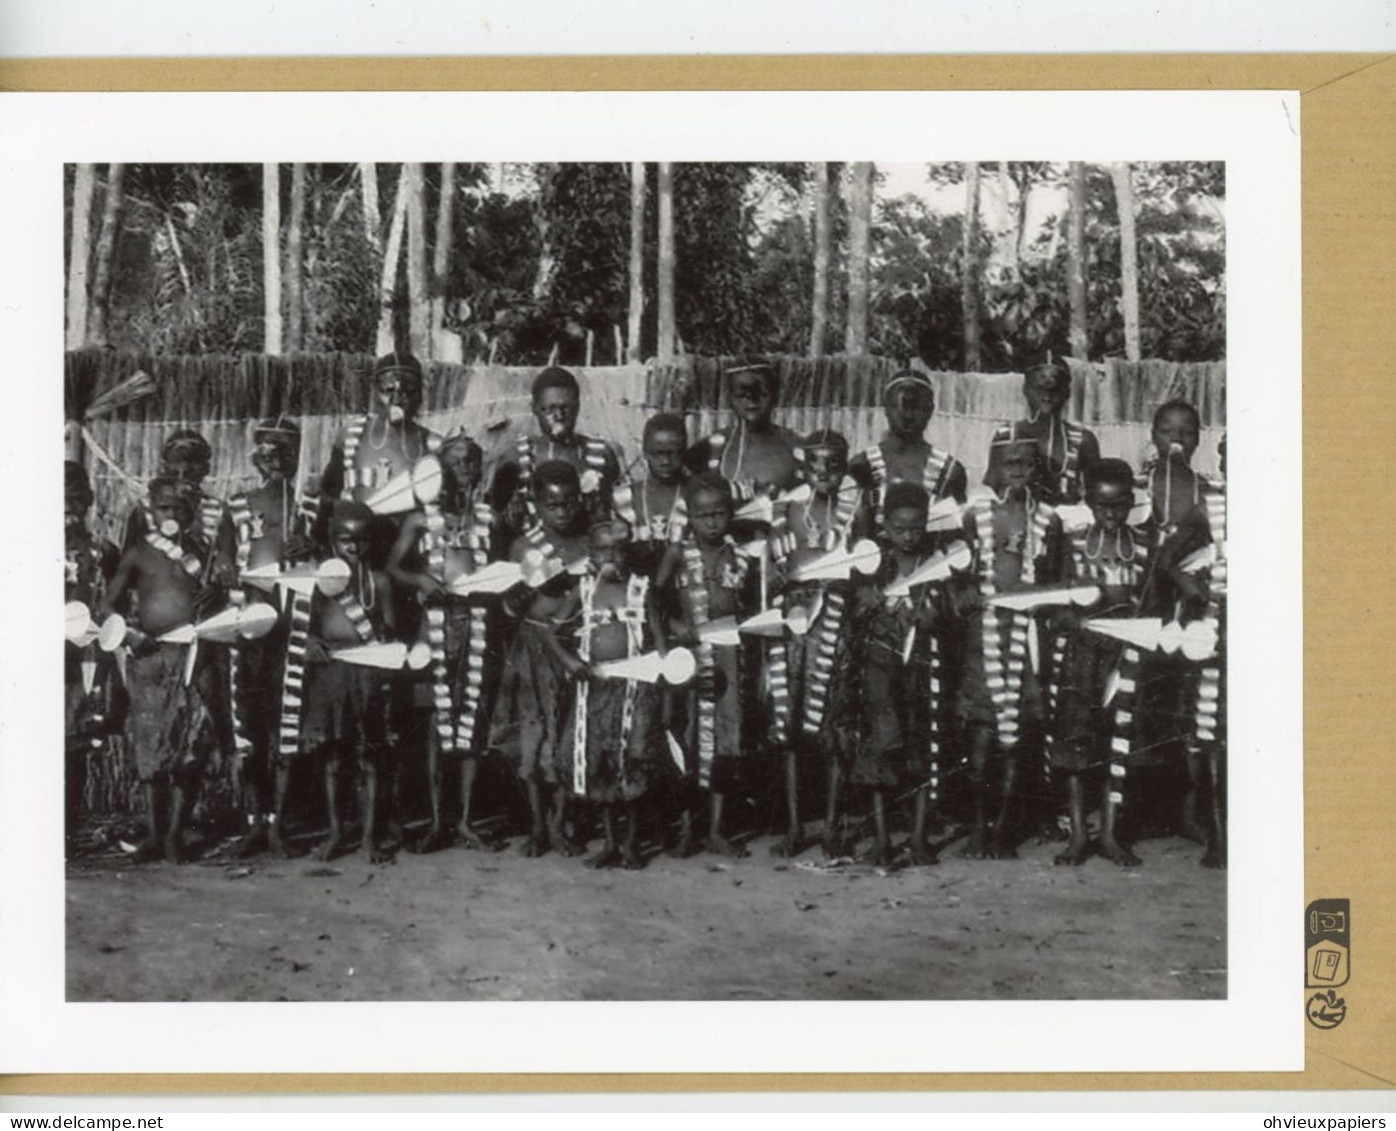 CONGO BELGE Banziville  1930  Pratique De L'excision   Tres Belle Photo - Ethniciteit & Culturen